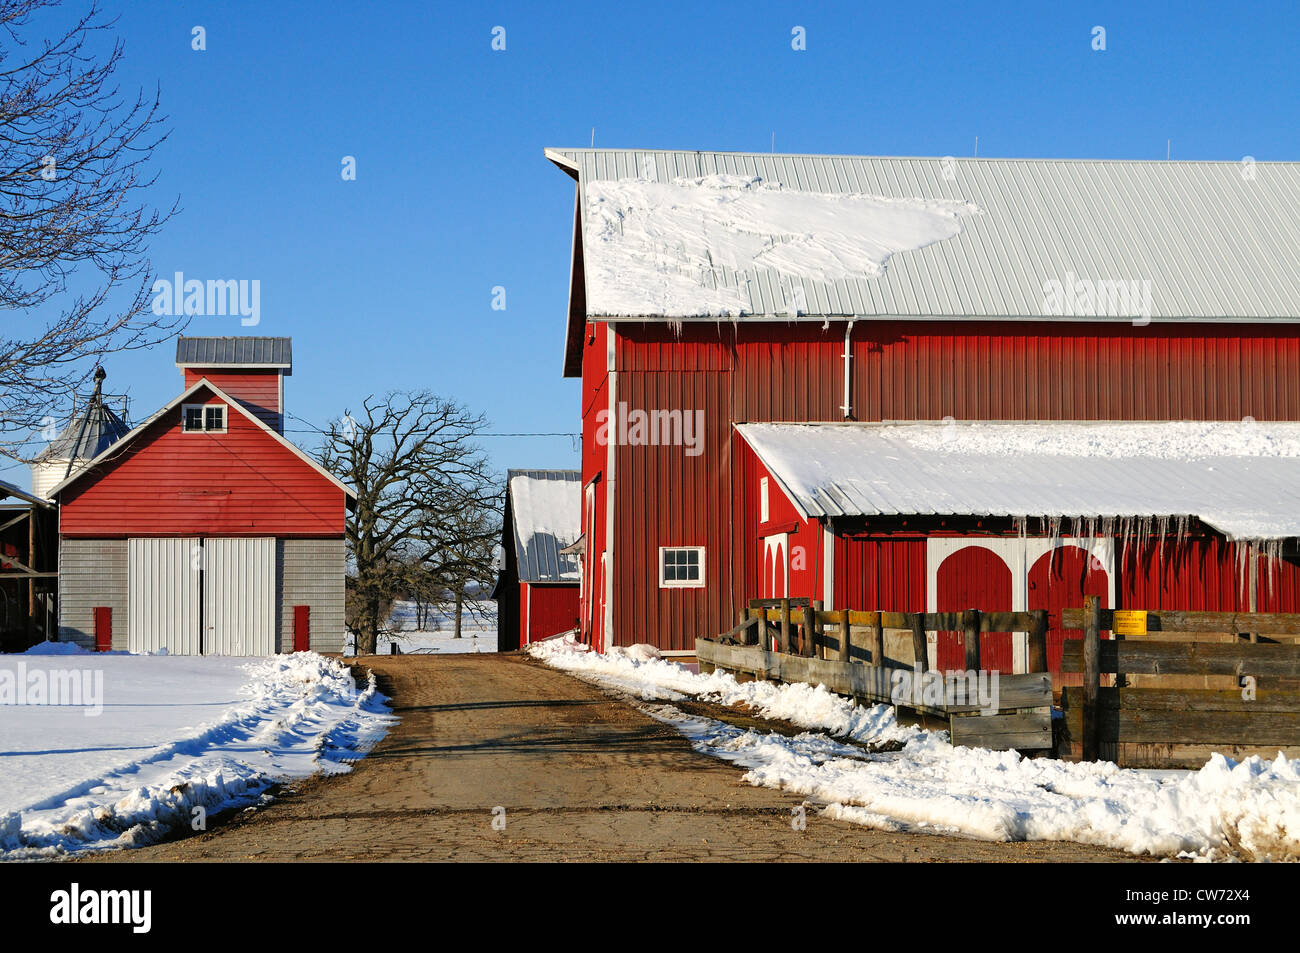 USA Illinois im späten Winter Szene des Mittleren landwirtschaftlichen Scheunen sitzen zwischen Taut wie Eiszapfen entlang Dach Linien bilden. Stockfoto